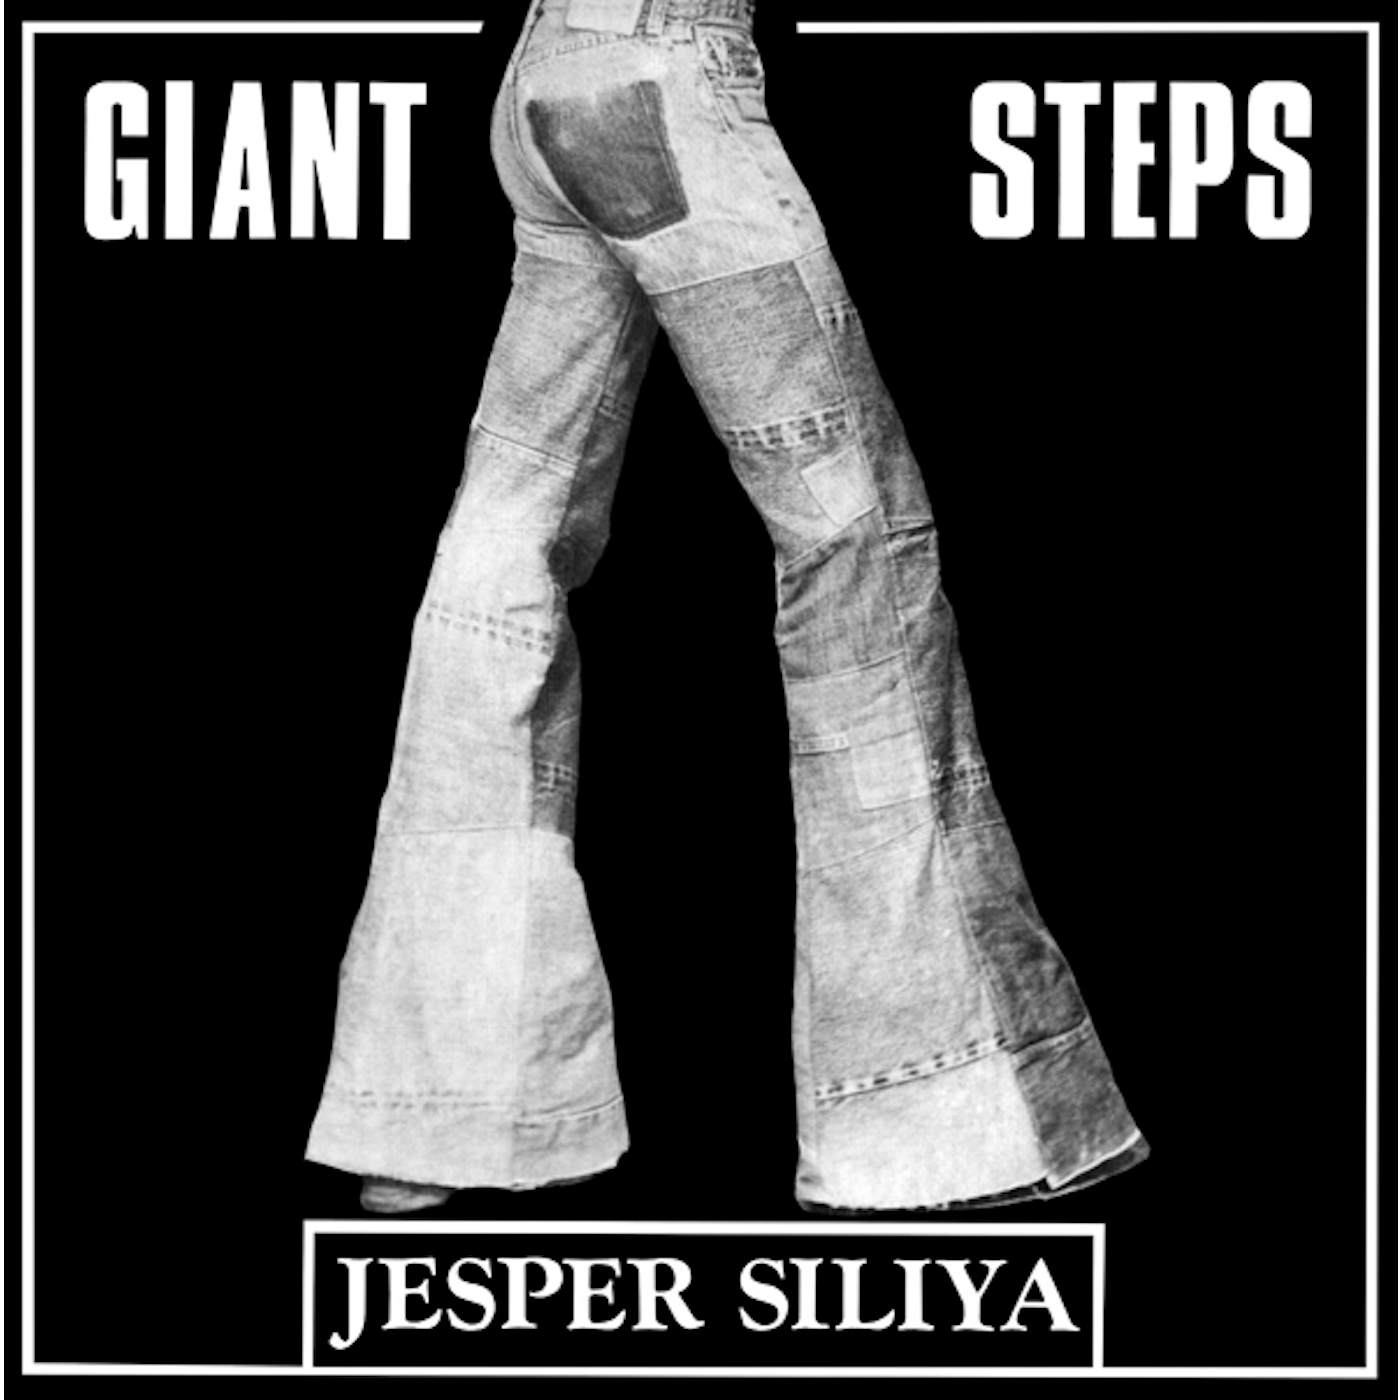 Jesper Siliya Giant Steps Vinyl Record